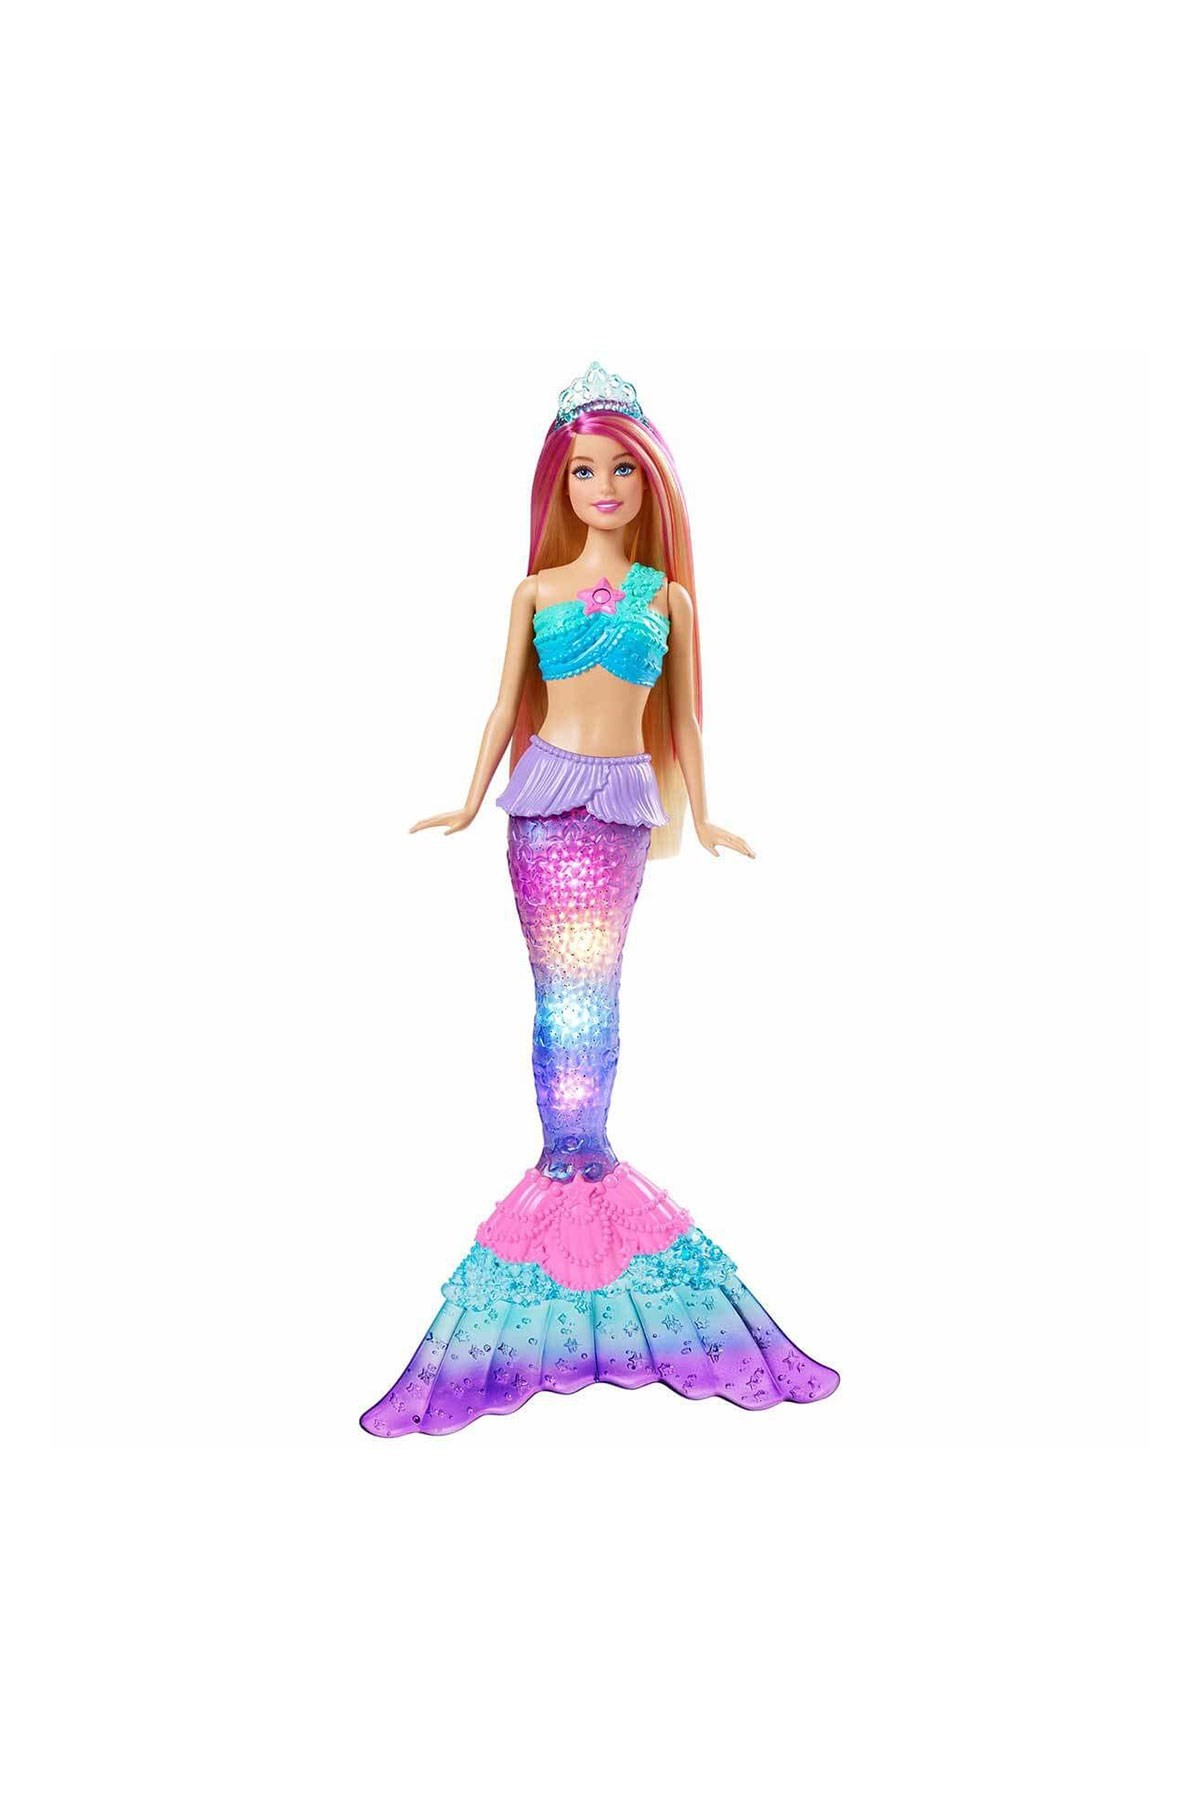 Barbie Dreamtopia Işıltılı Deniz Kızı HDJ36